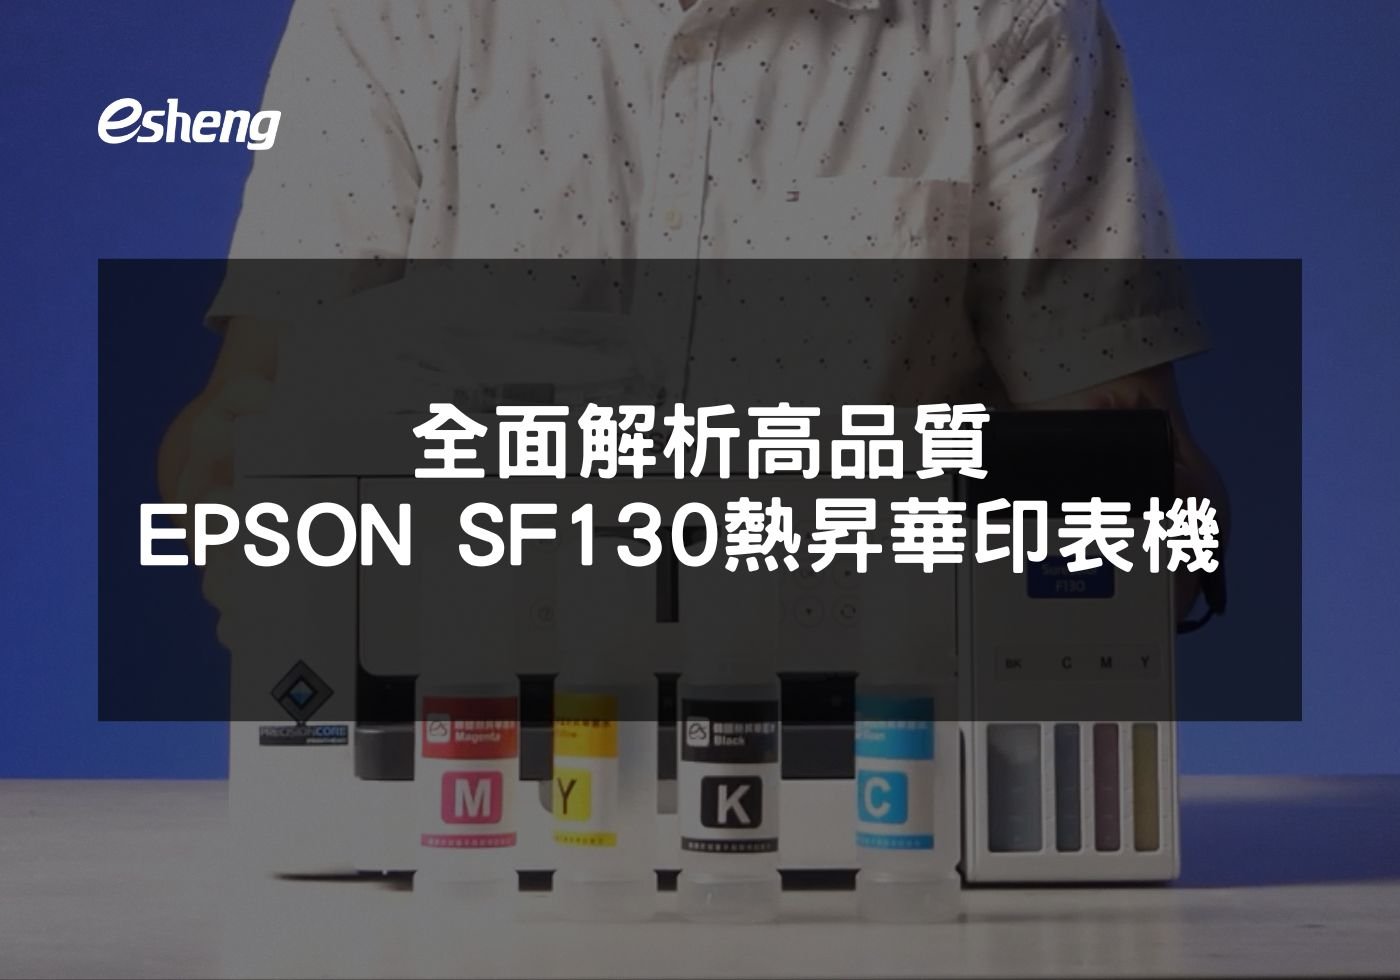 閱讀更多文章 全面解析高品質EPSON SF130熱昇華印表機